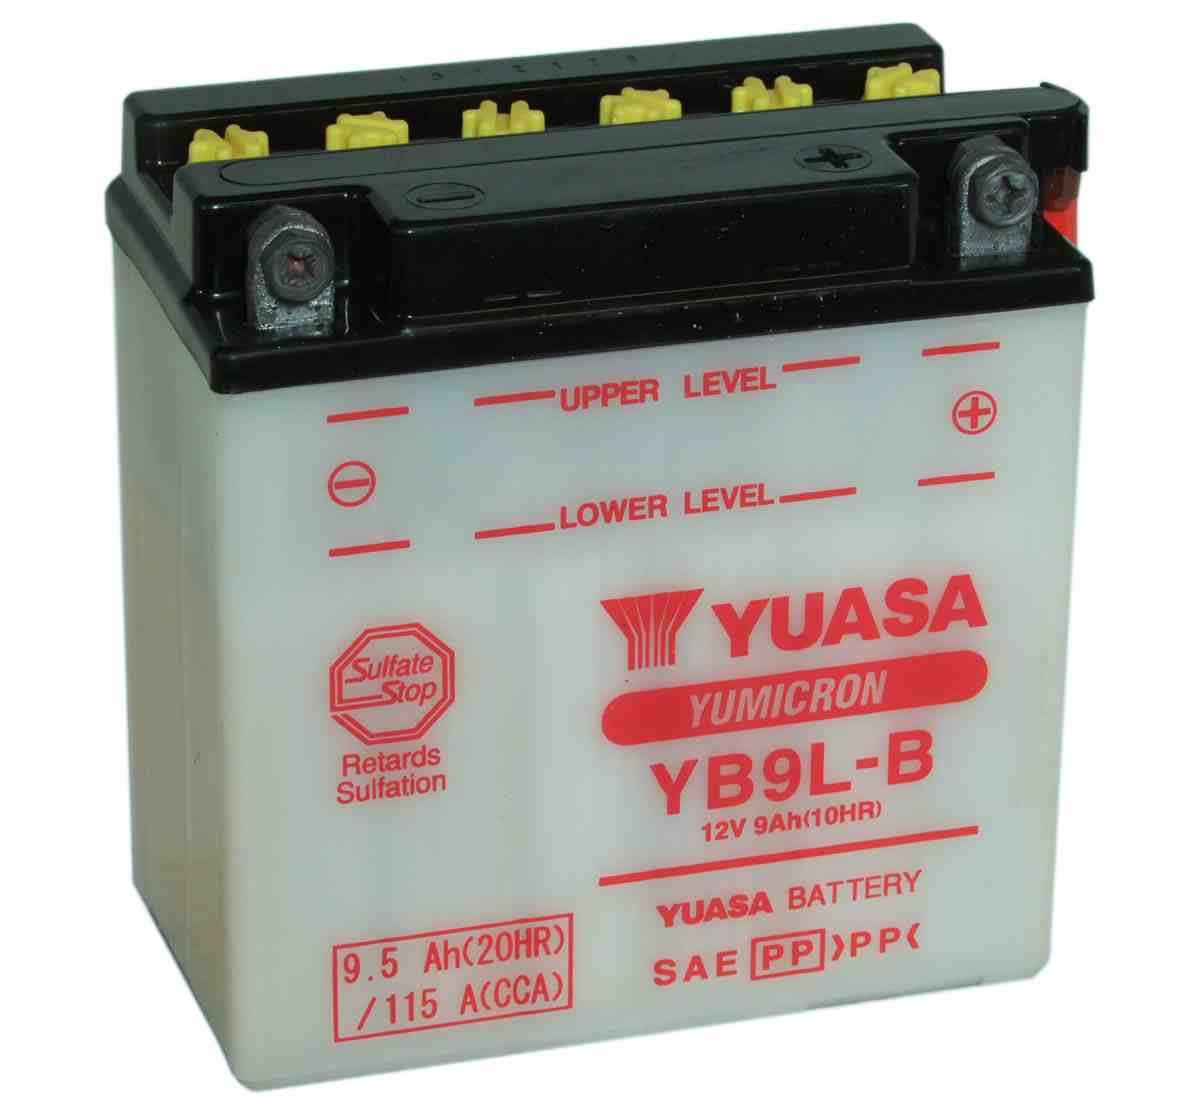 Bateria para moto o ciclomotor marca YUASA modelo YB9L-B de 12v 9Ah